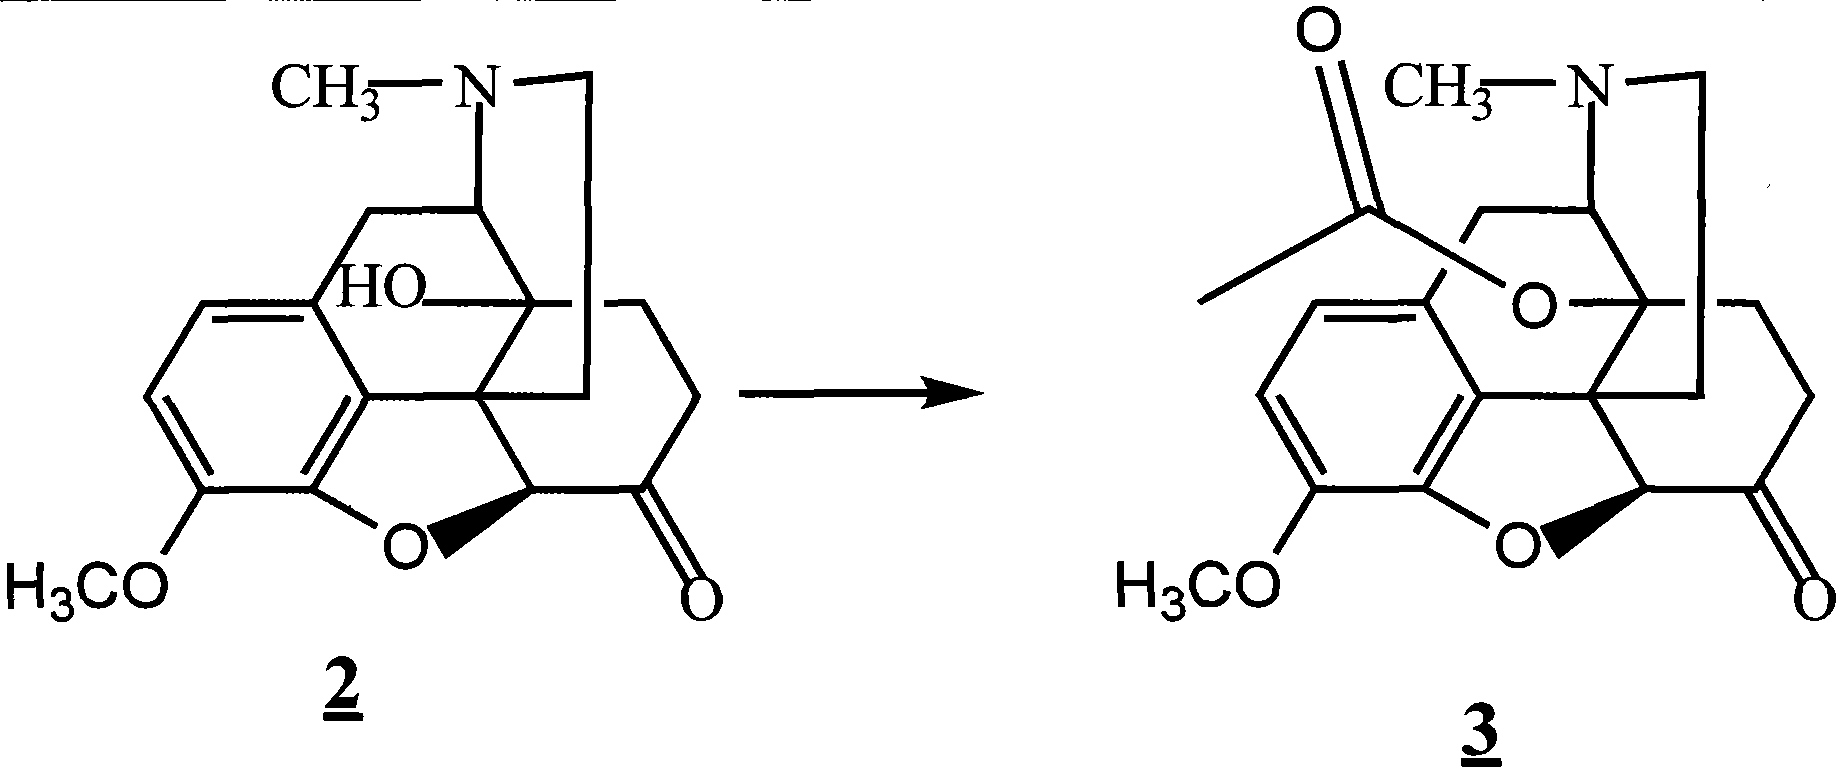 Method for synthesizing naloxone or naltrexone